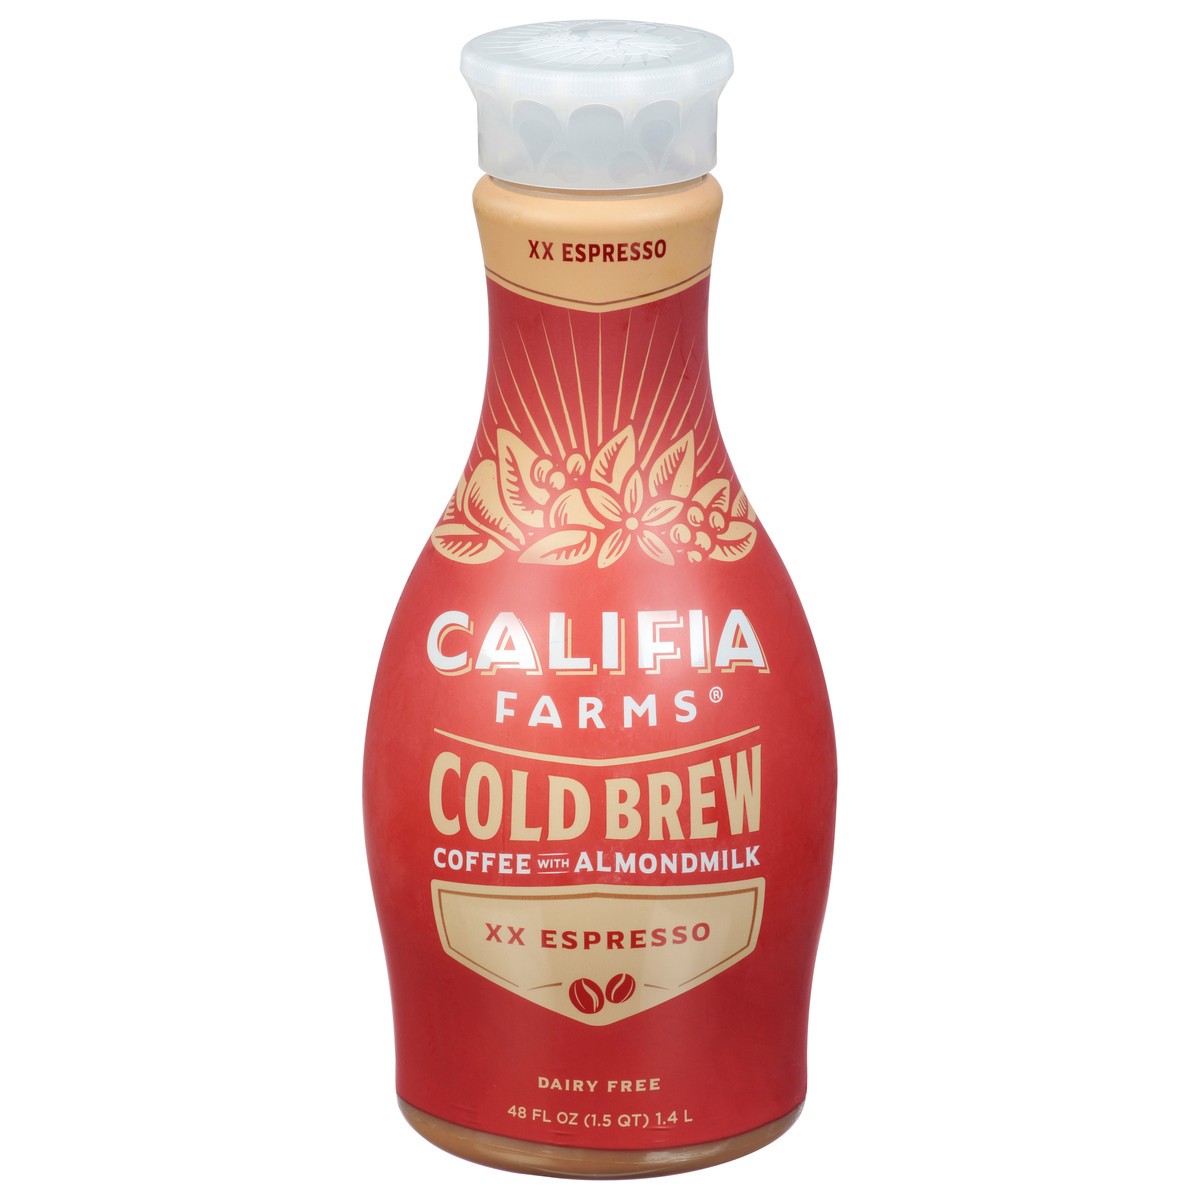 slide 1 of 14, Califia Farms XX Espresso Cold Brew Coffee with Almond Milk, 48 fl oz